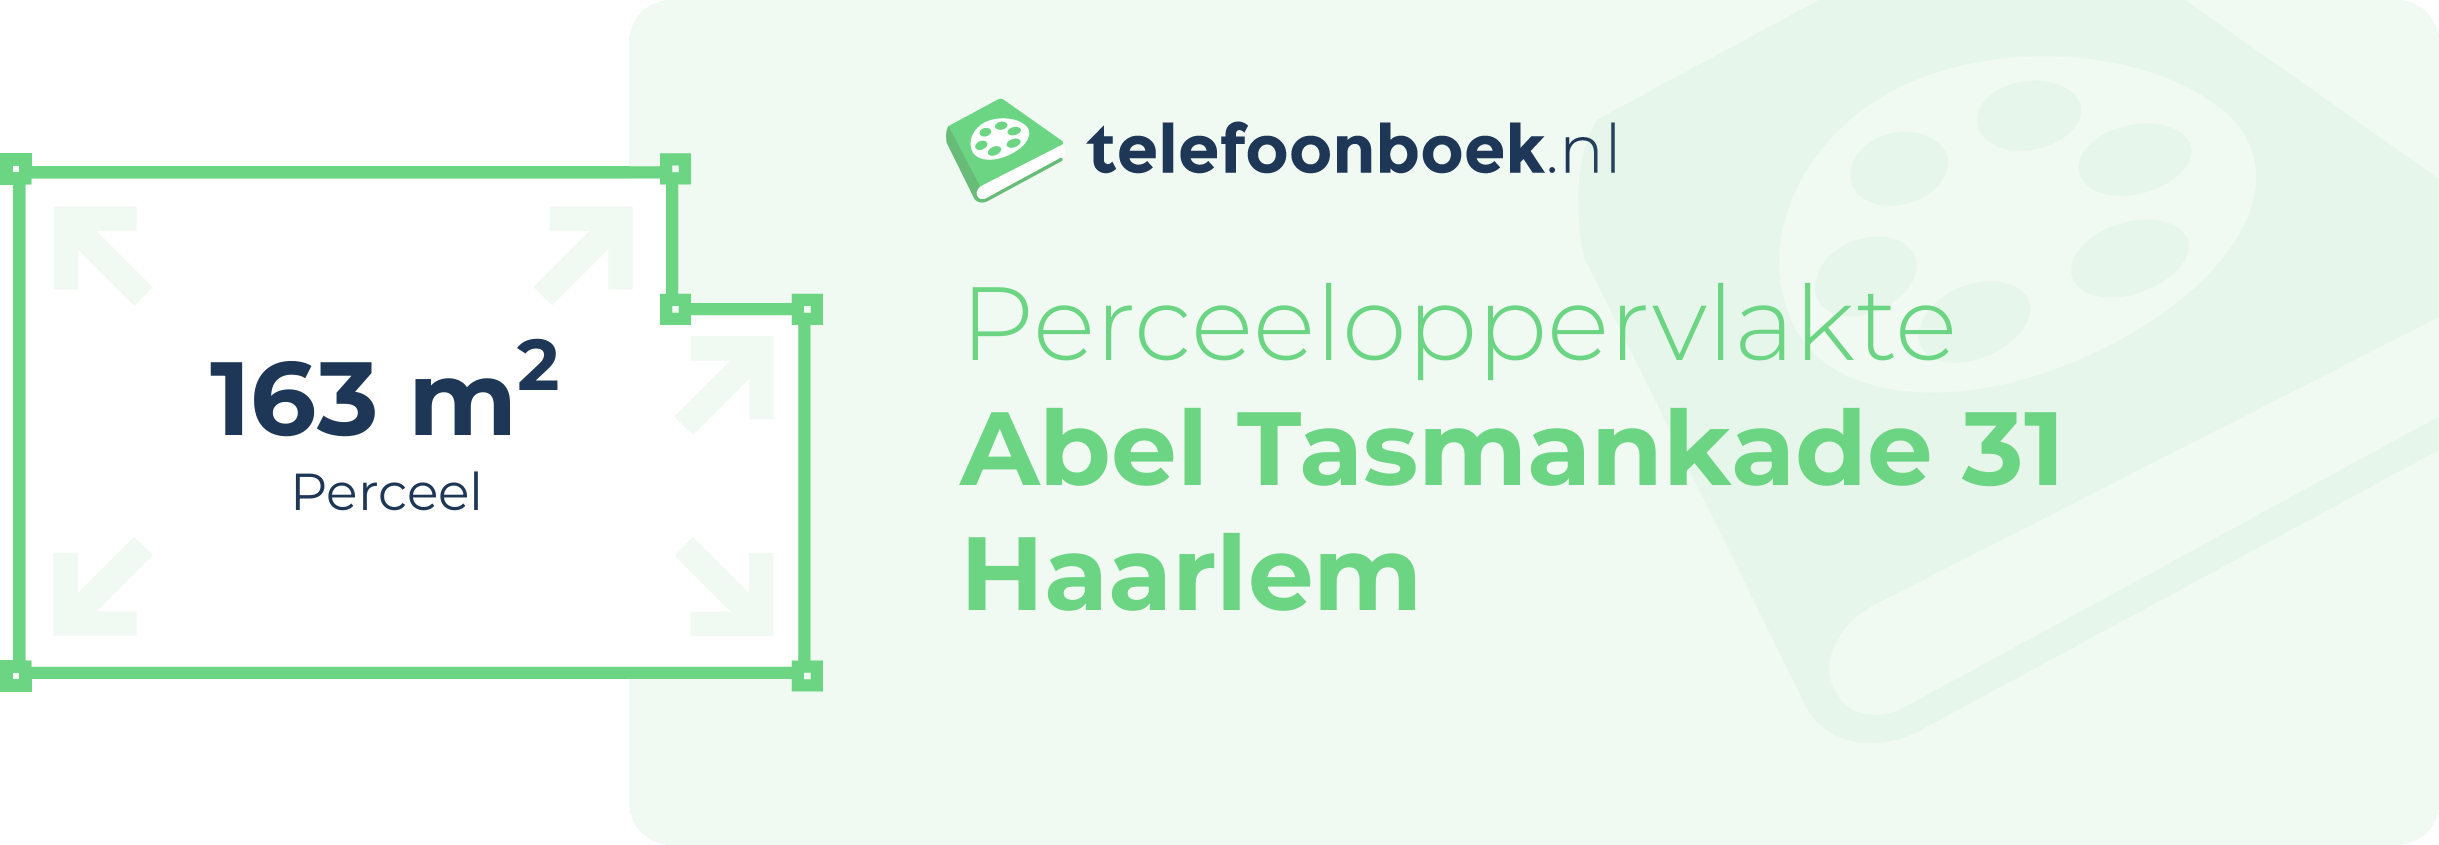 Perceeloppervlakte Abel Tasmankade 31 Haarlem